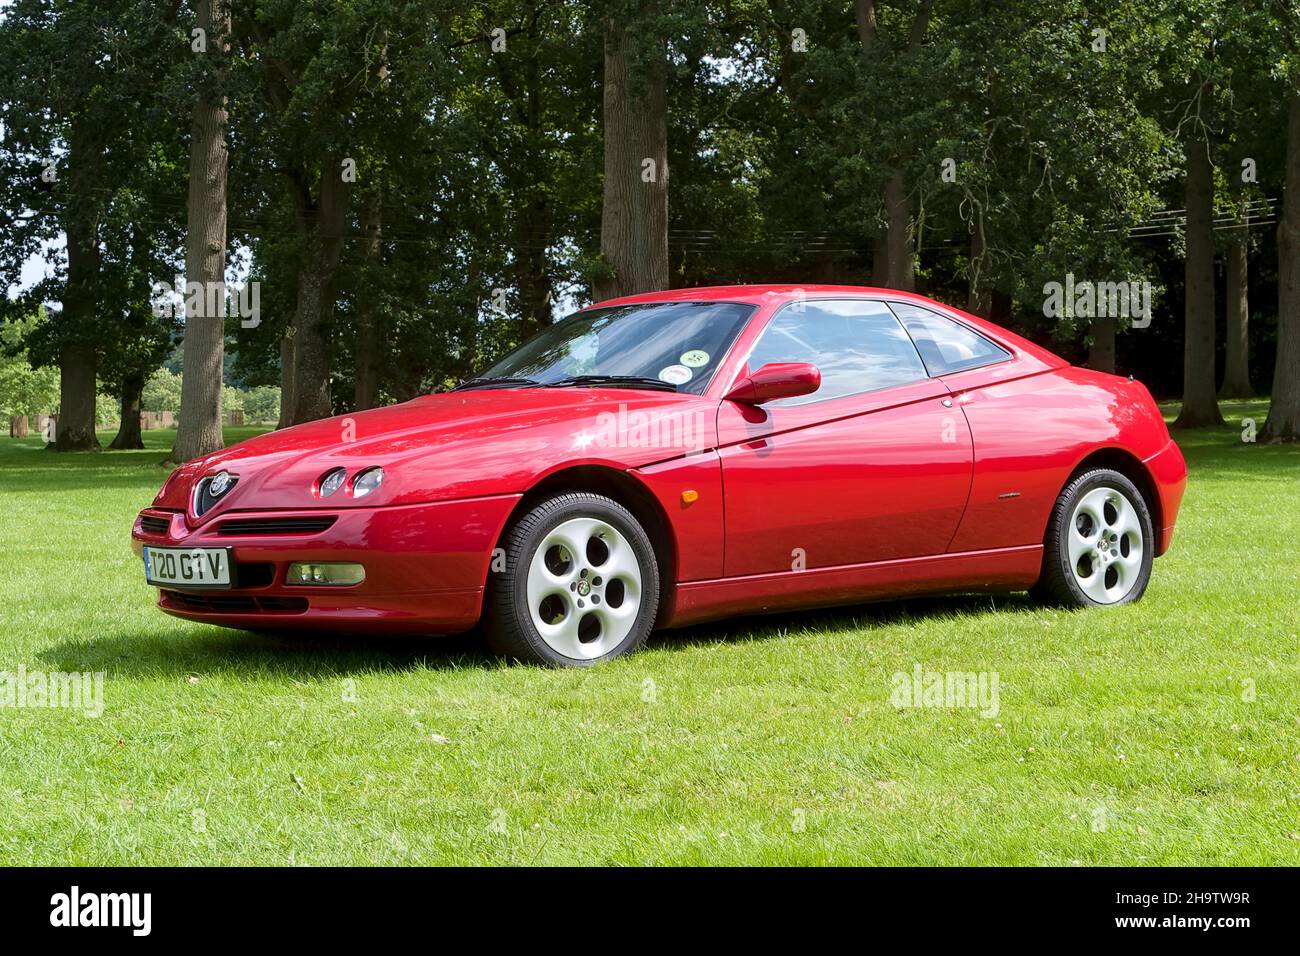 Longleat House, Wiltshire, Regno Unito - Luglio 25 2004: Un italiano Made 1999 Alfa Romeo GTV (Gran Turismo veloce) (fase 2) 2+2 vettura sportiva Coupe. Foto Stock